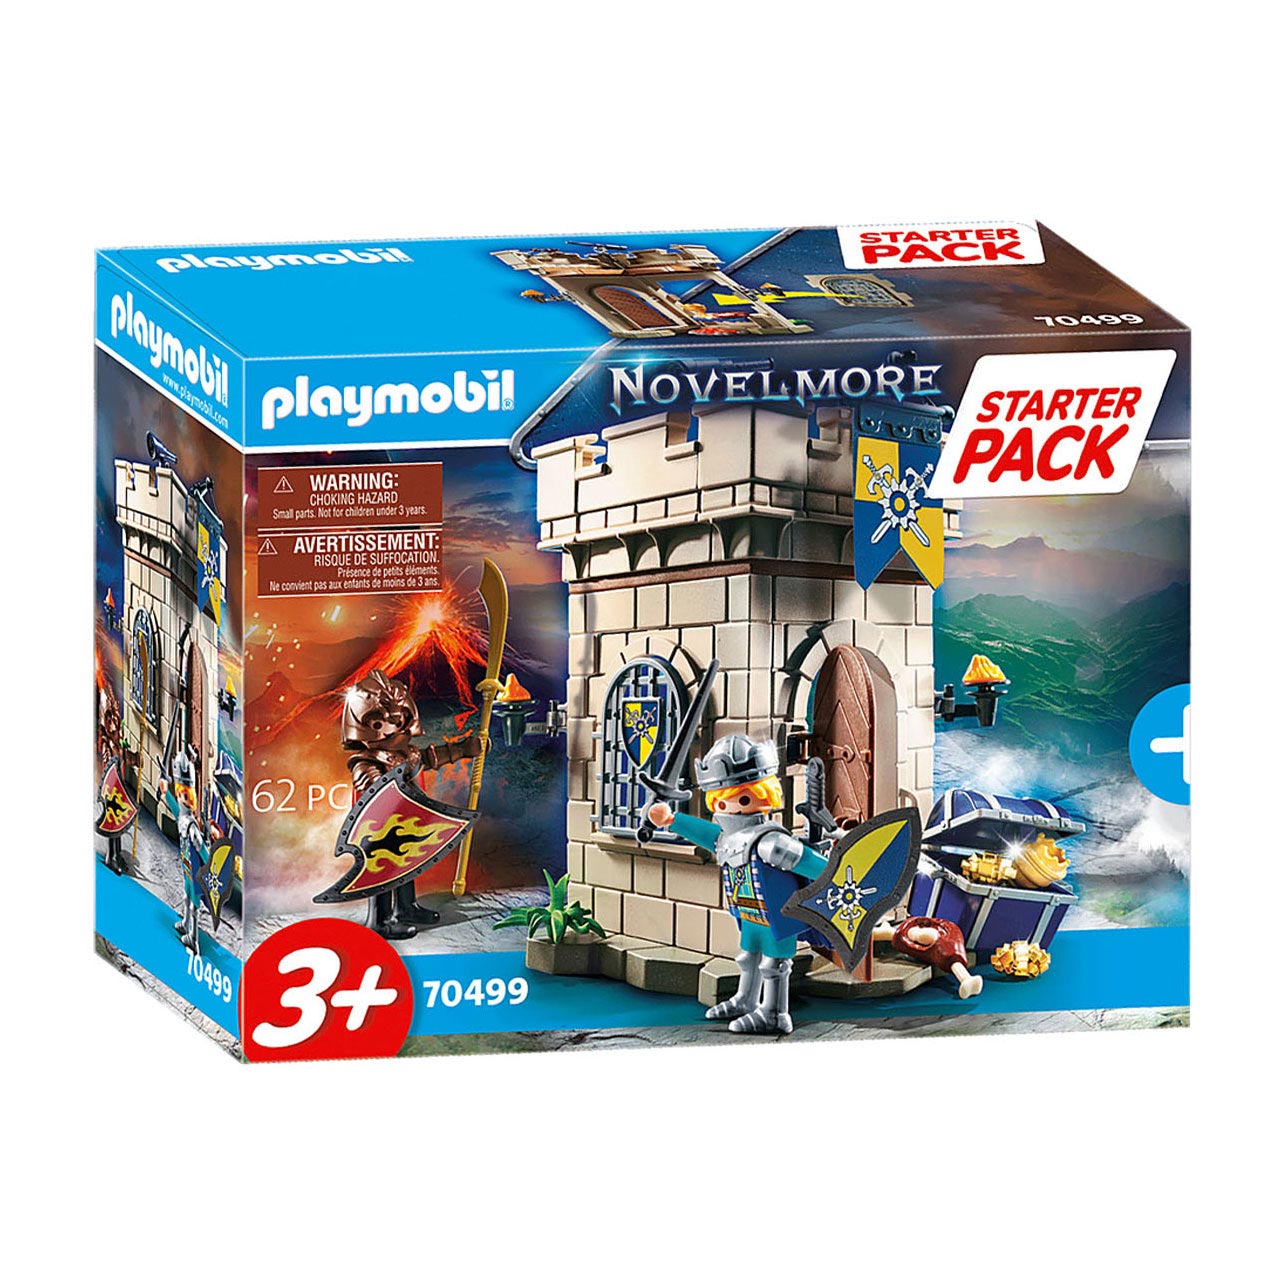 Playmobil 70499 set Novelmore Knight Fort Thimble